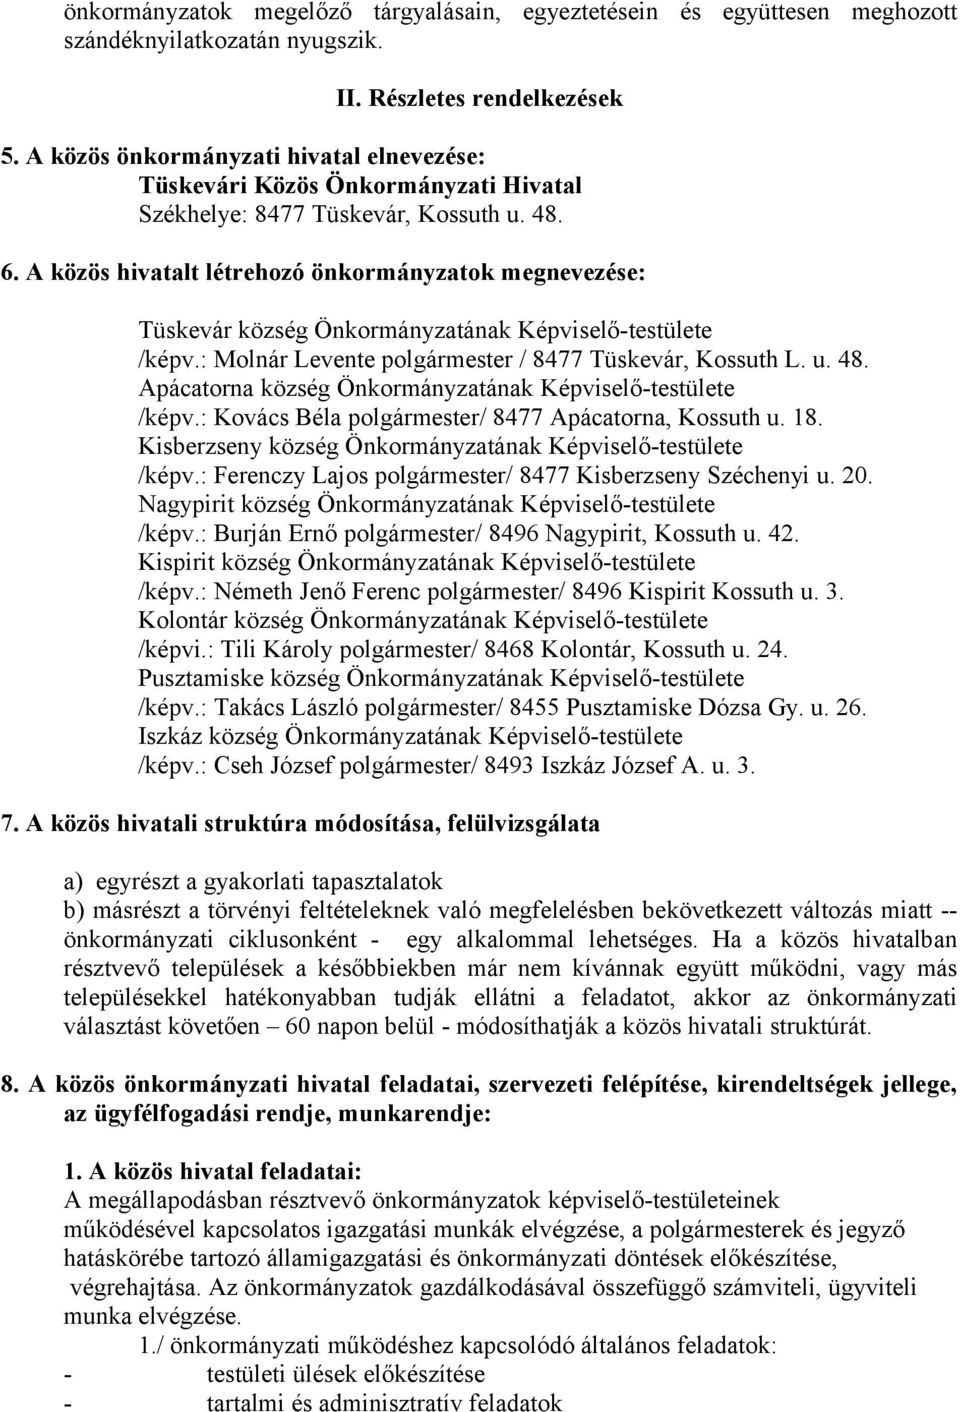 A közös hivatalt létrehozó önkormányzatok megnevezése: Tüskevár község Önkormányzatának Képviselő-testülete /képv.: Molnár Levente polgármester / 8477 Tüskevár, Kossuth L. u. 48.